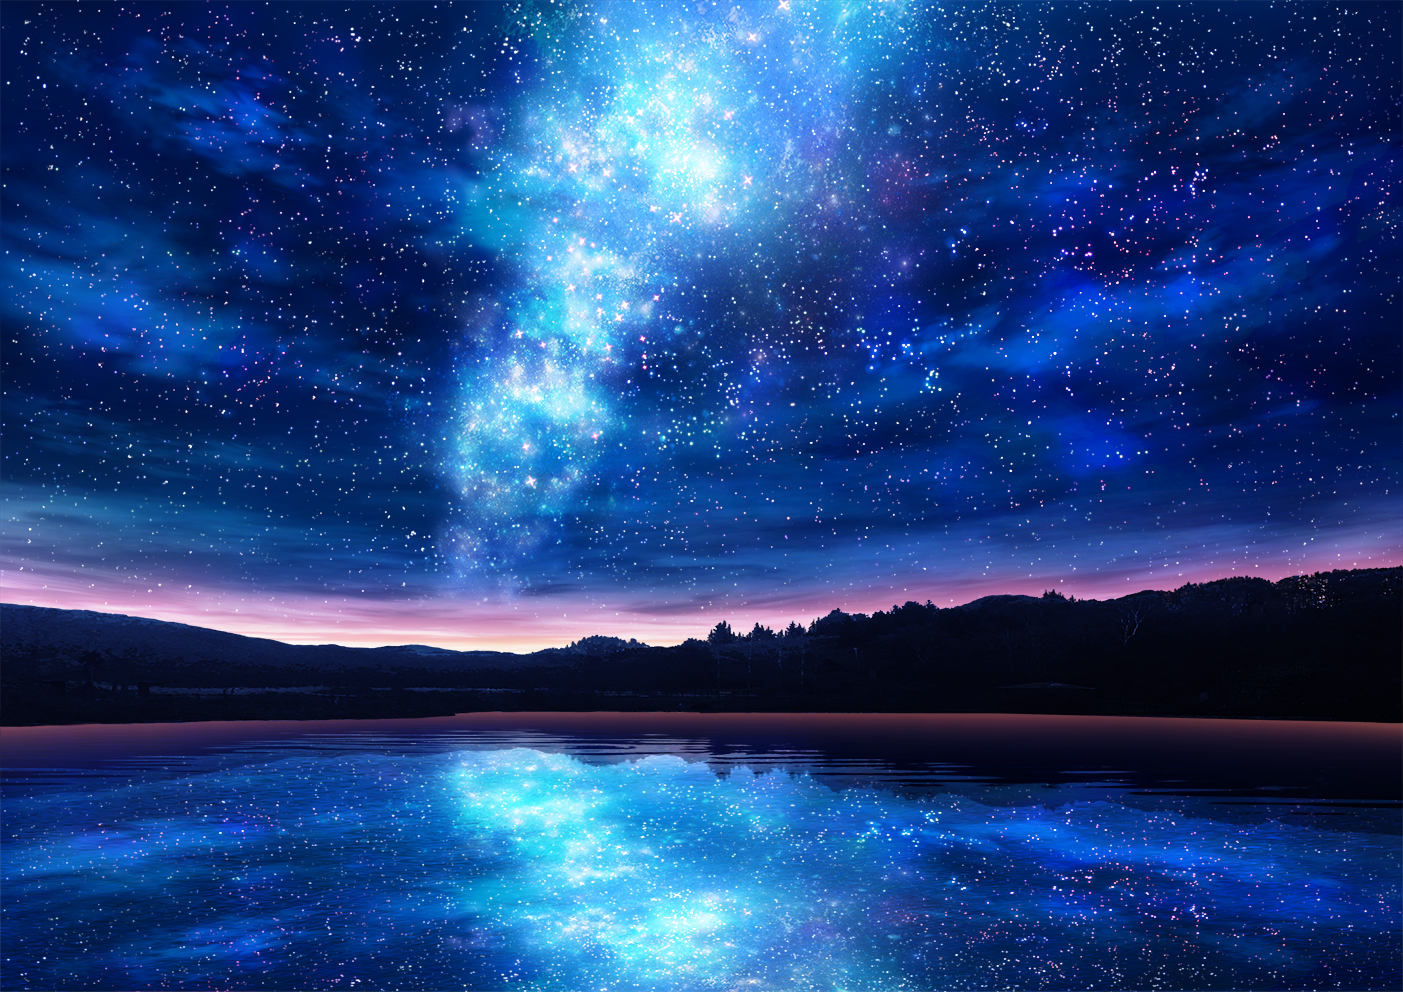 葫芦池星空-背景背景美術